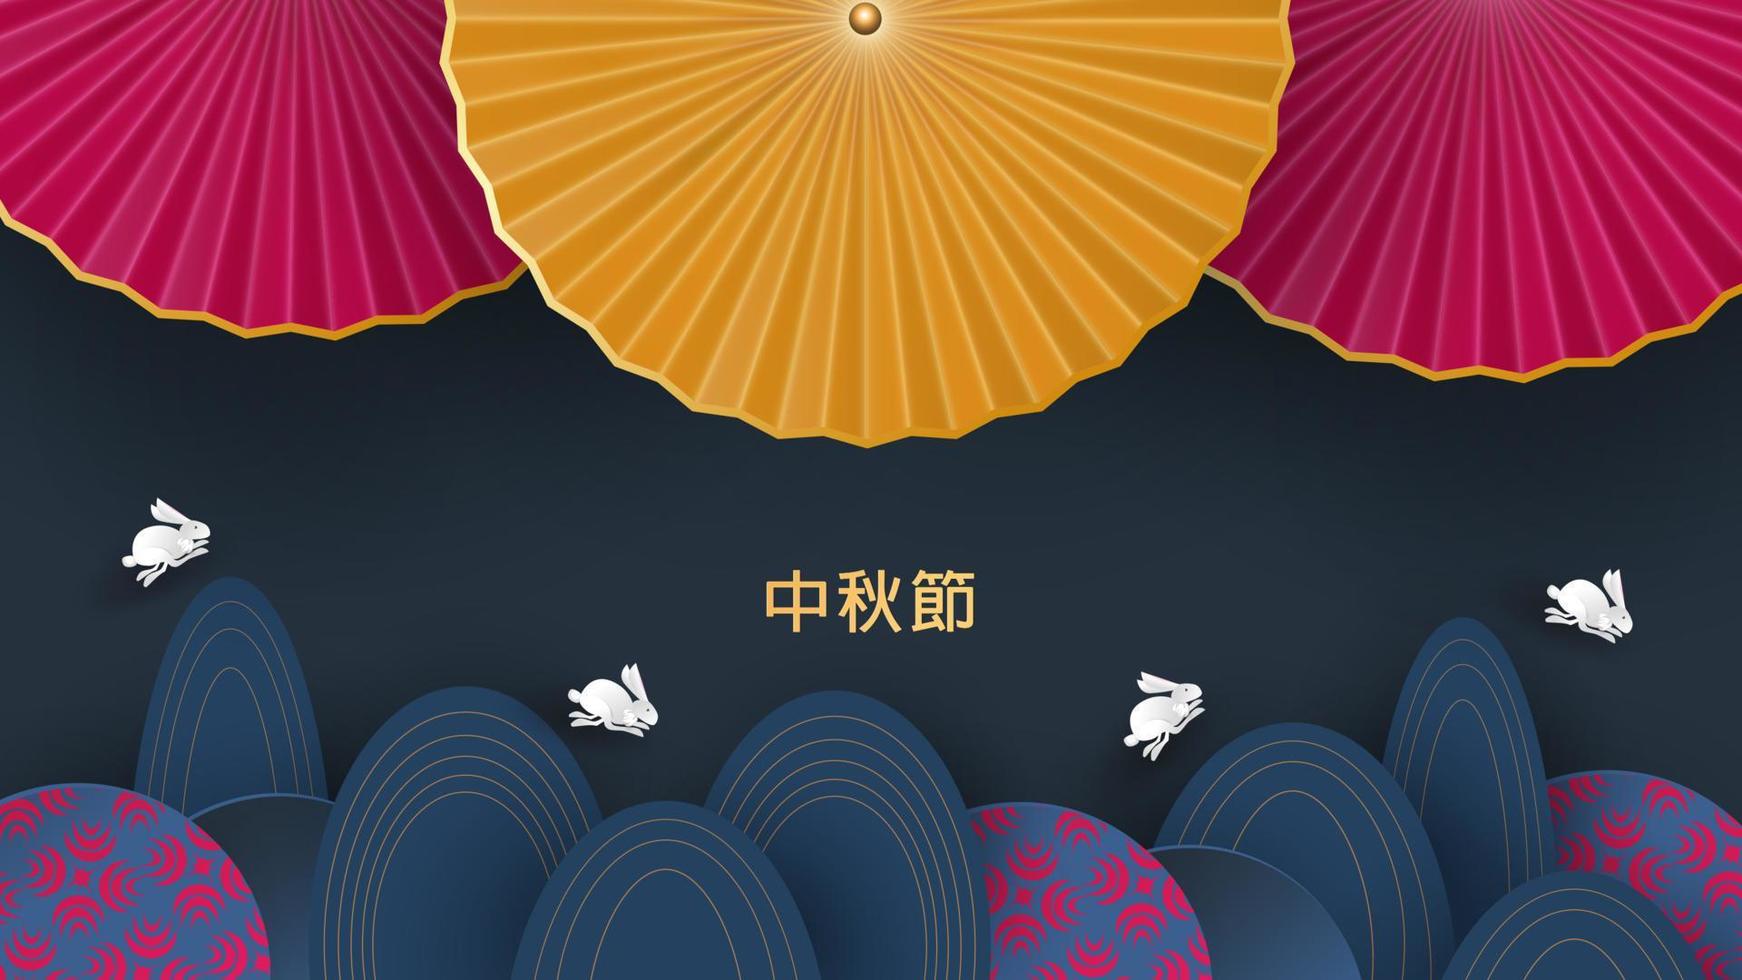 bannerdesign med traditionella kinesiska cirklar mönster som representerar fullmånen, kinesisk text glad mitten av hösten, guld på mörkblått. vektor platt stil. plats för din text.